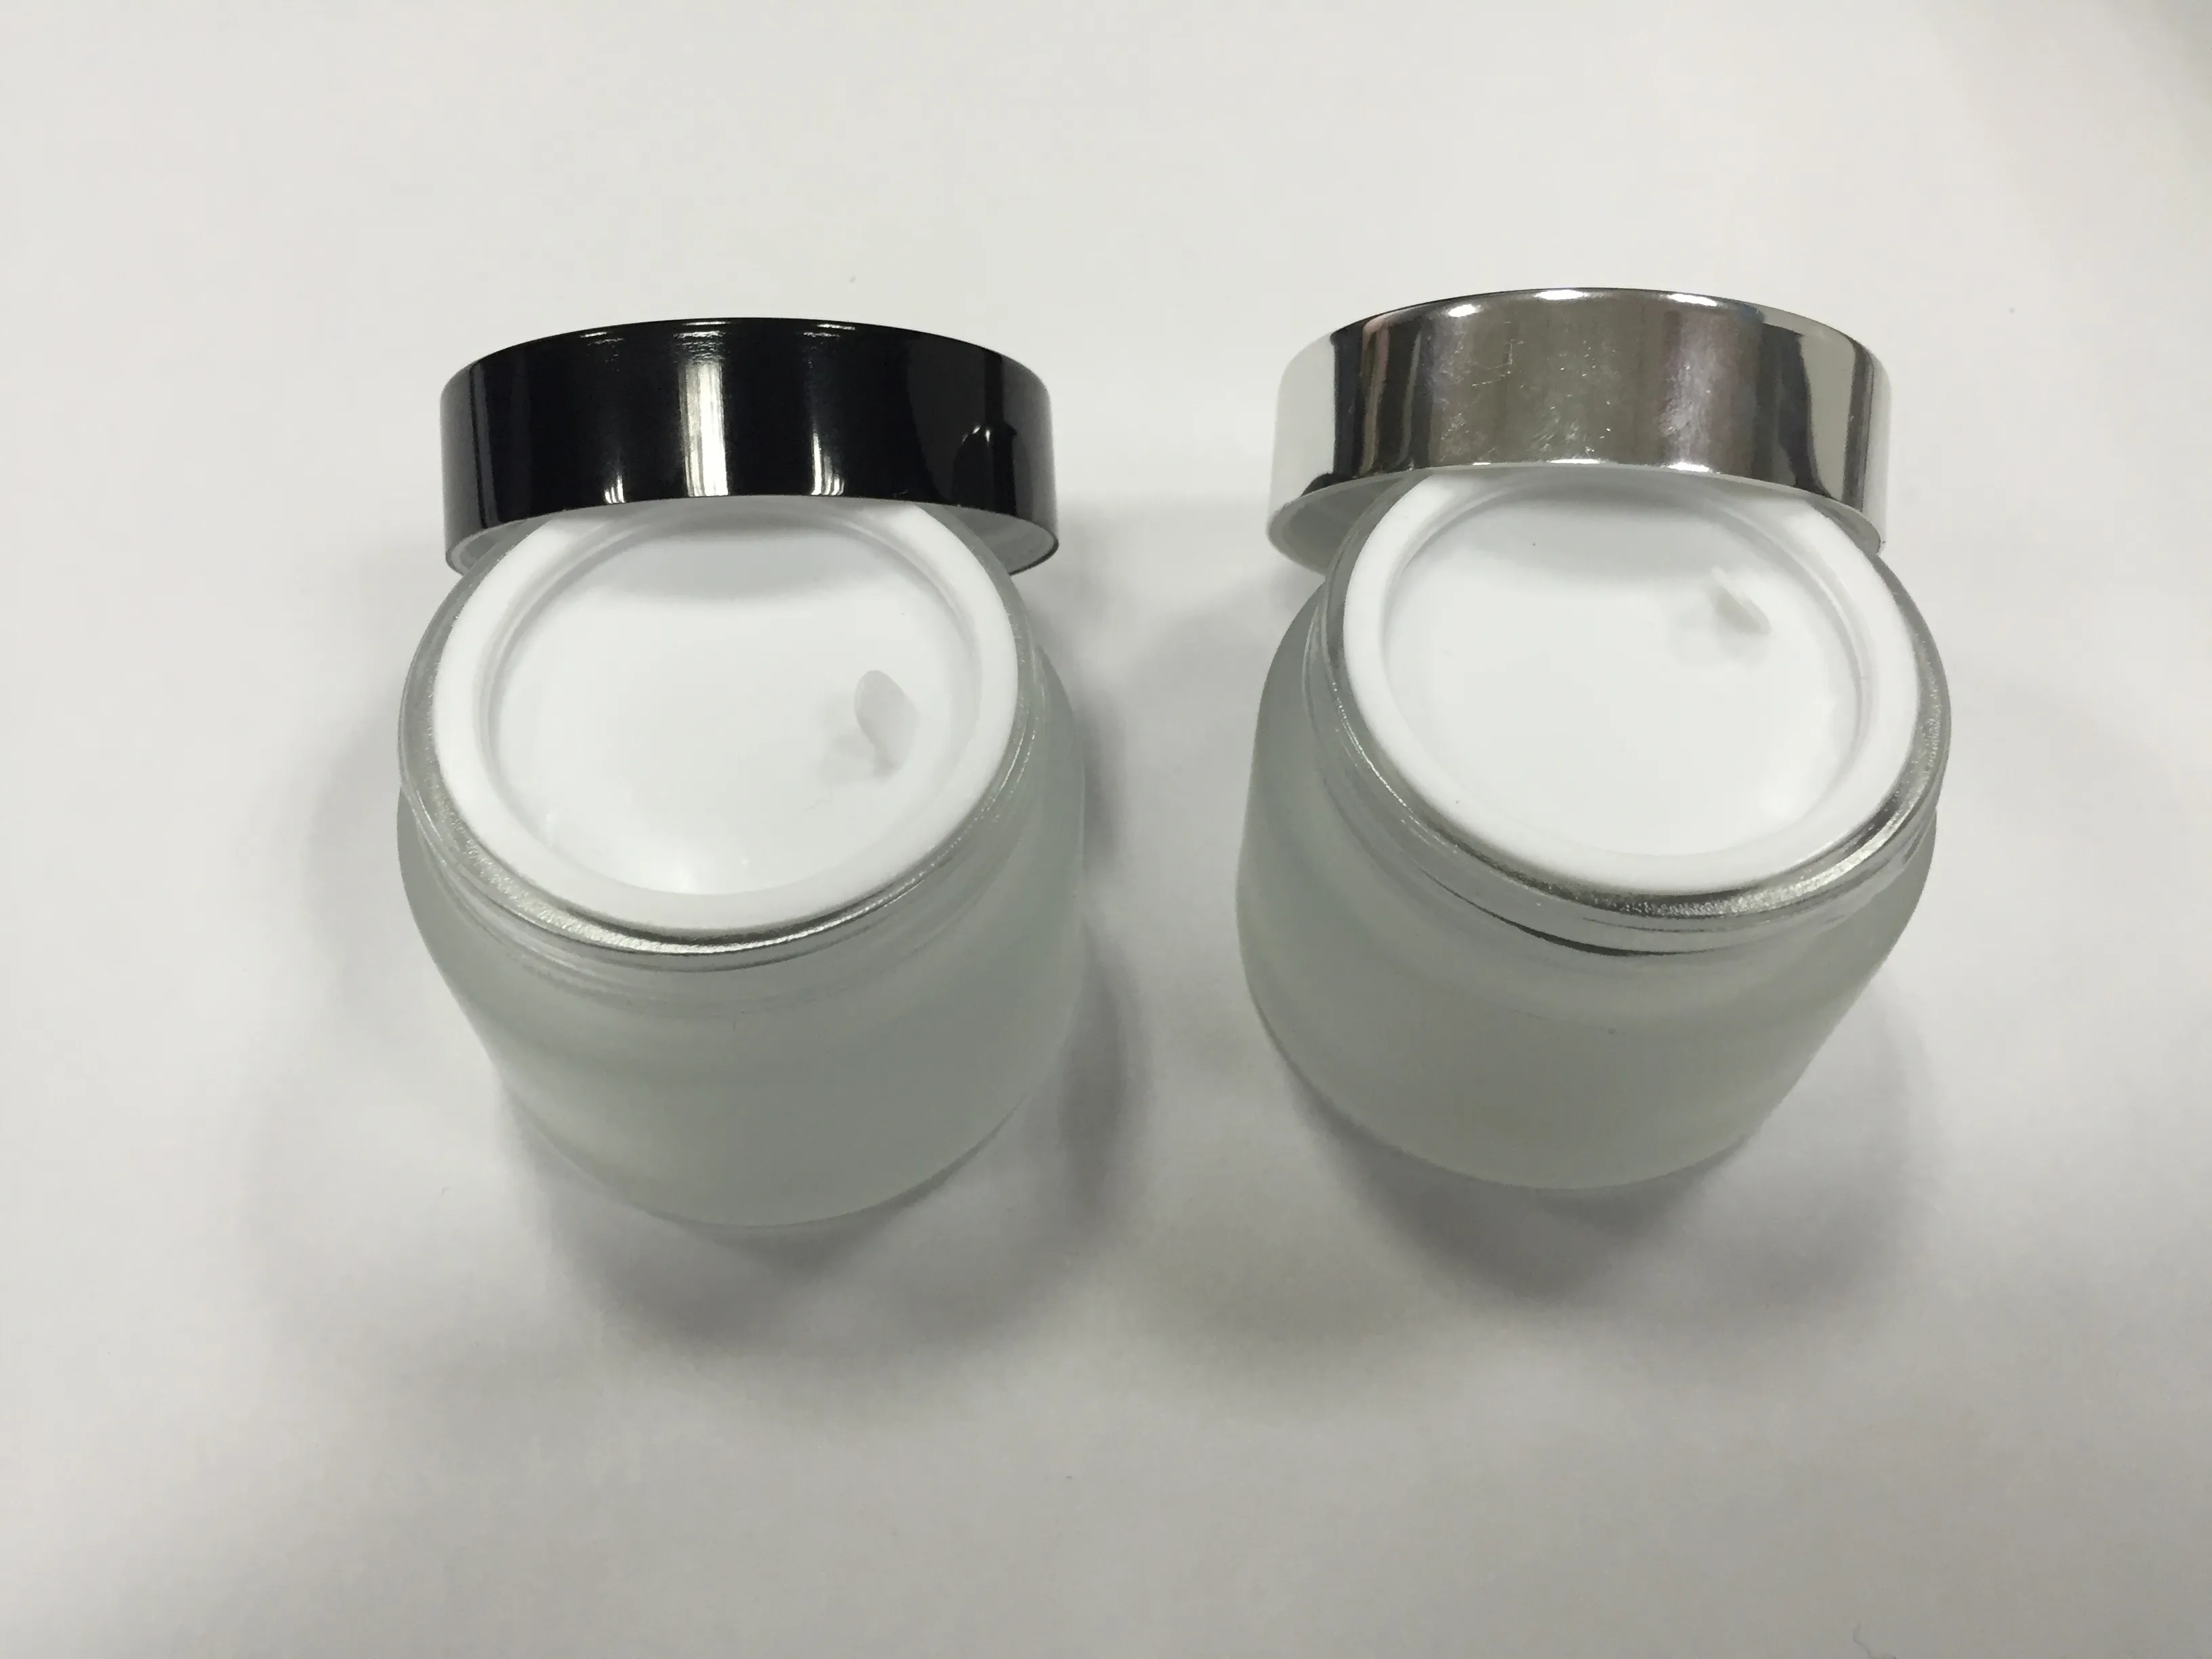 Livraison gratuite - pot de crème pour le verre givré 50 g, contenant en verre, emballage cosmétique